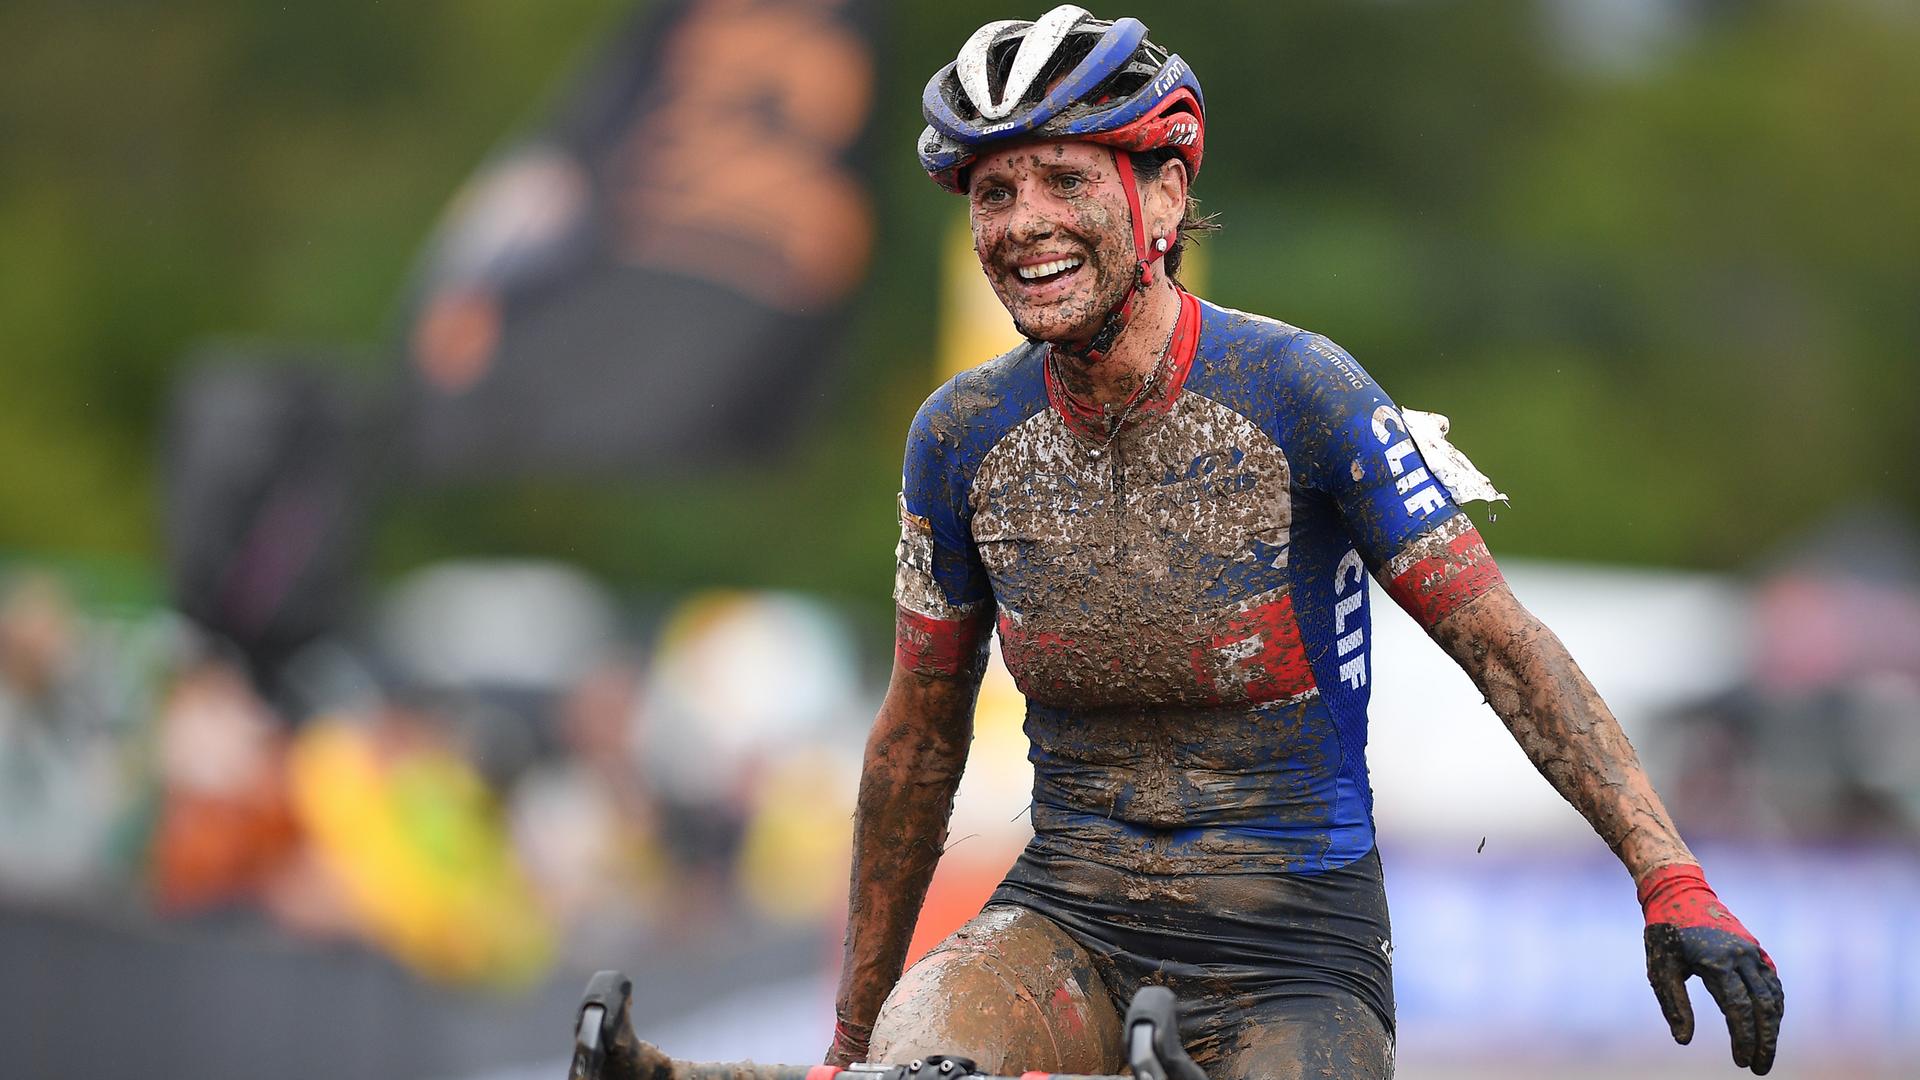 Die tschechische Radsportlerin und Langläuferin Katerina Nash fährt voll Matsch gespritzt aber lächelnd als Siegerin eines Cyclocross-Rennens über die Ziellinie